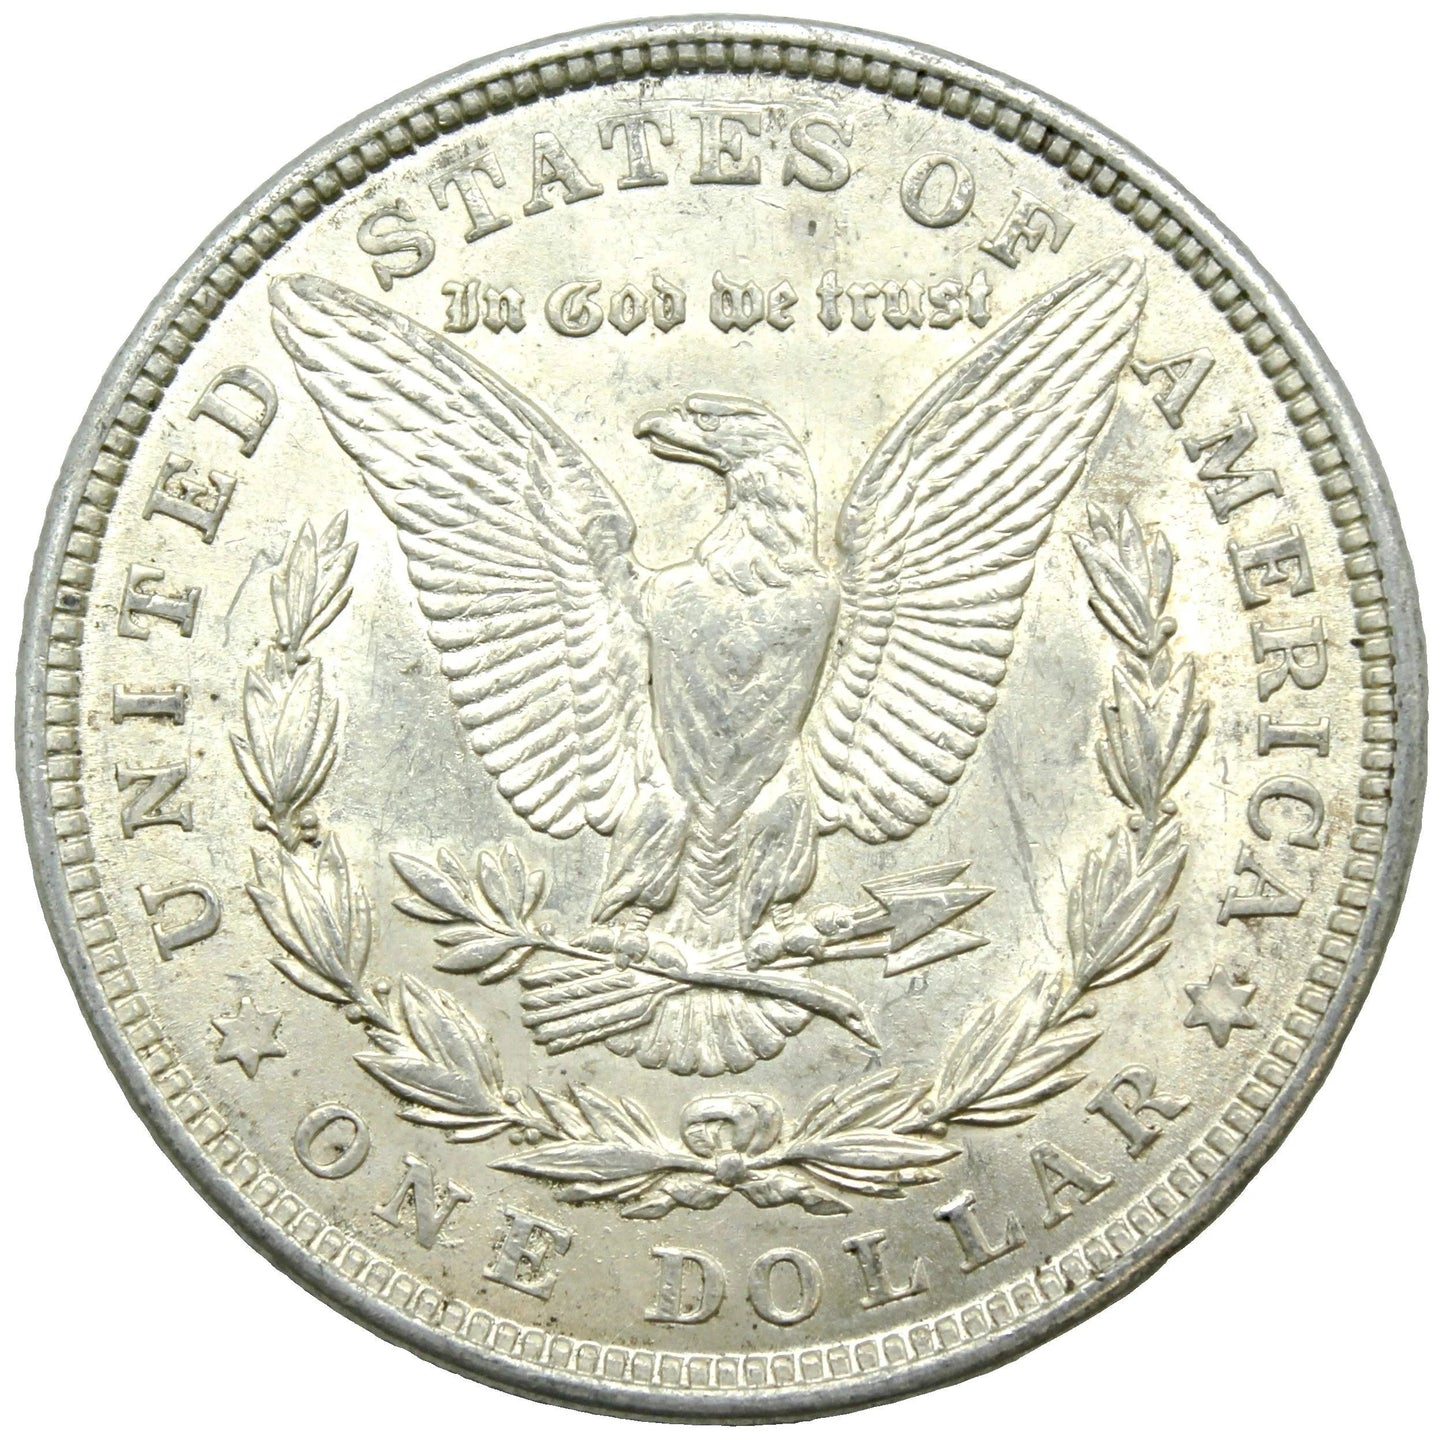 Morgan Silver Dollar Coin (1878-1921, XF)